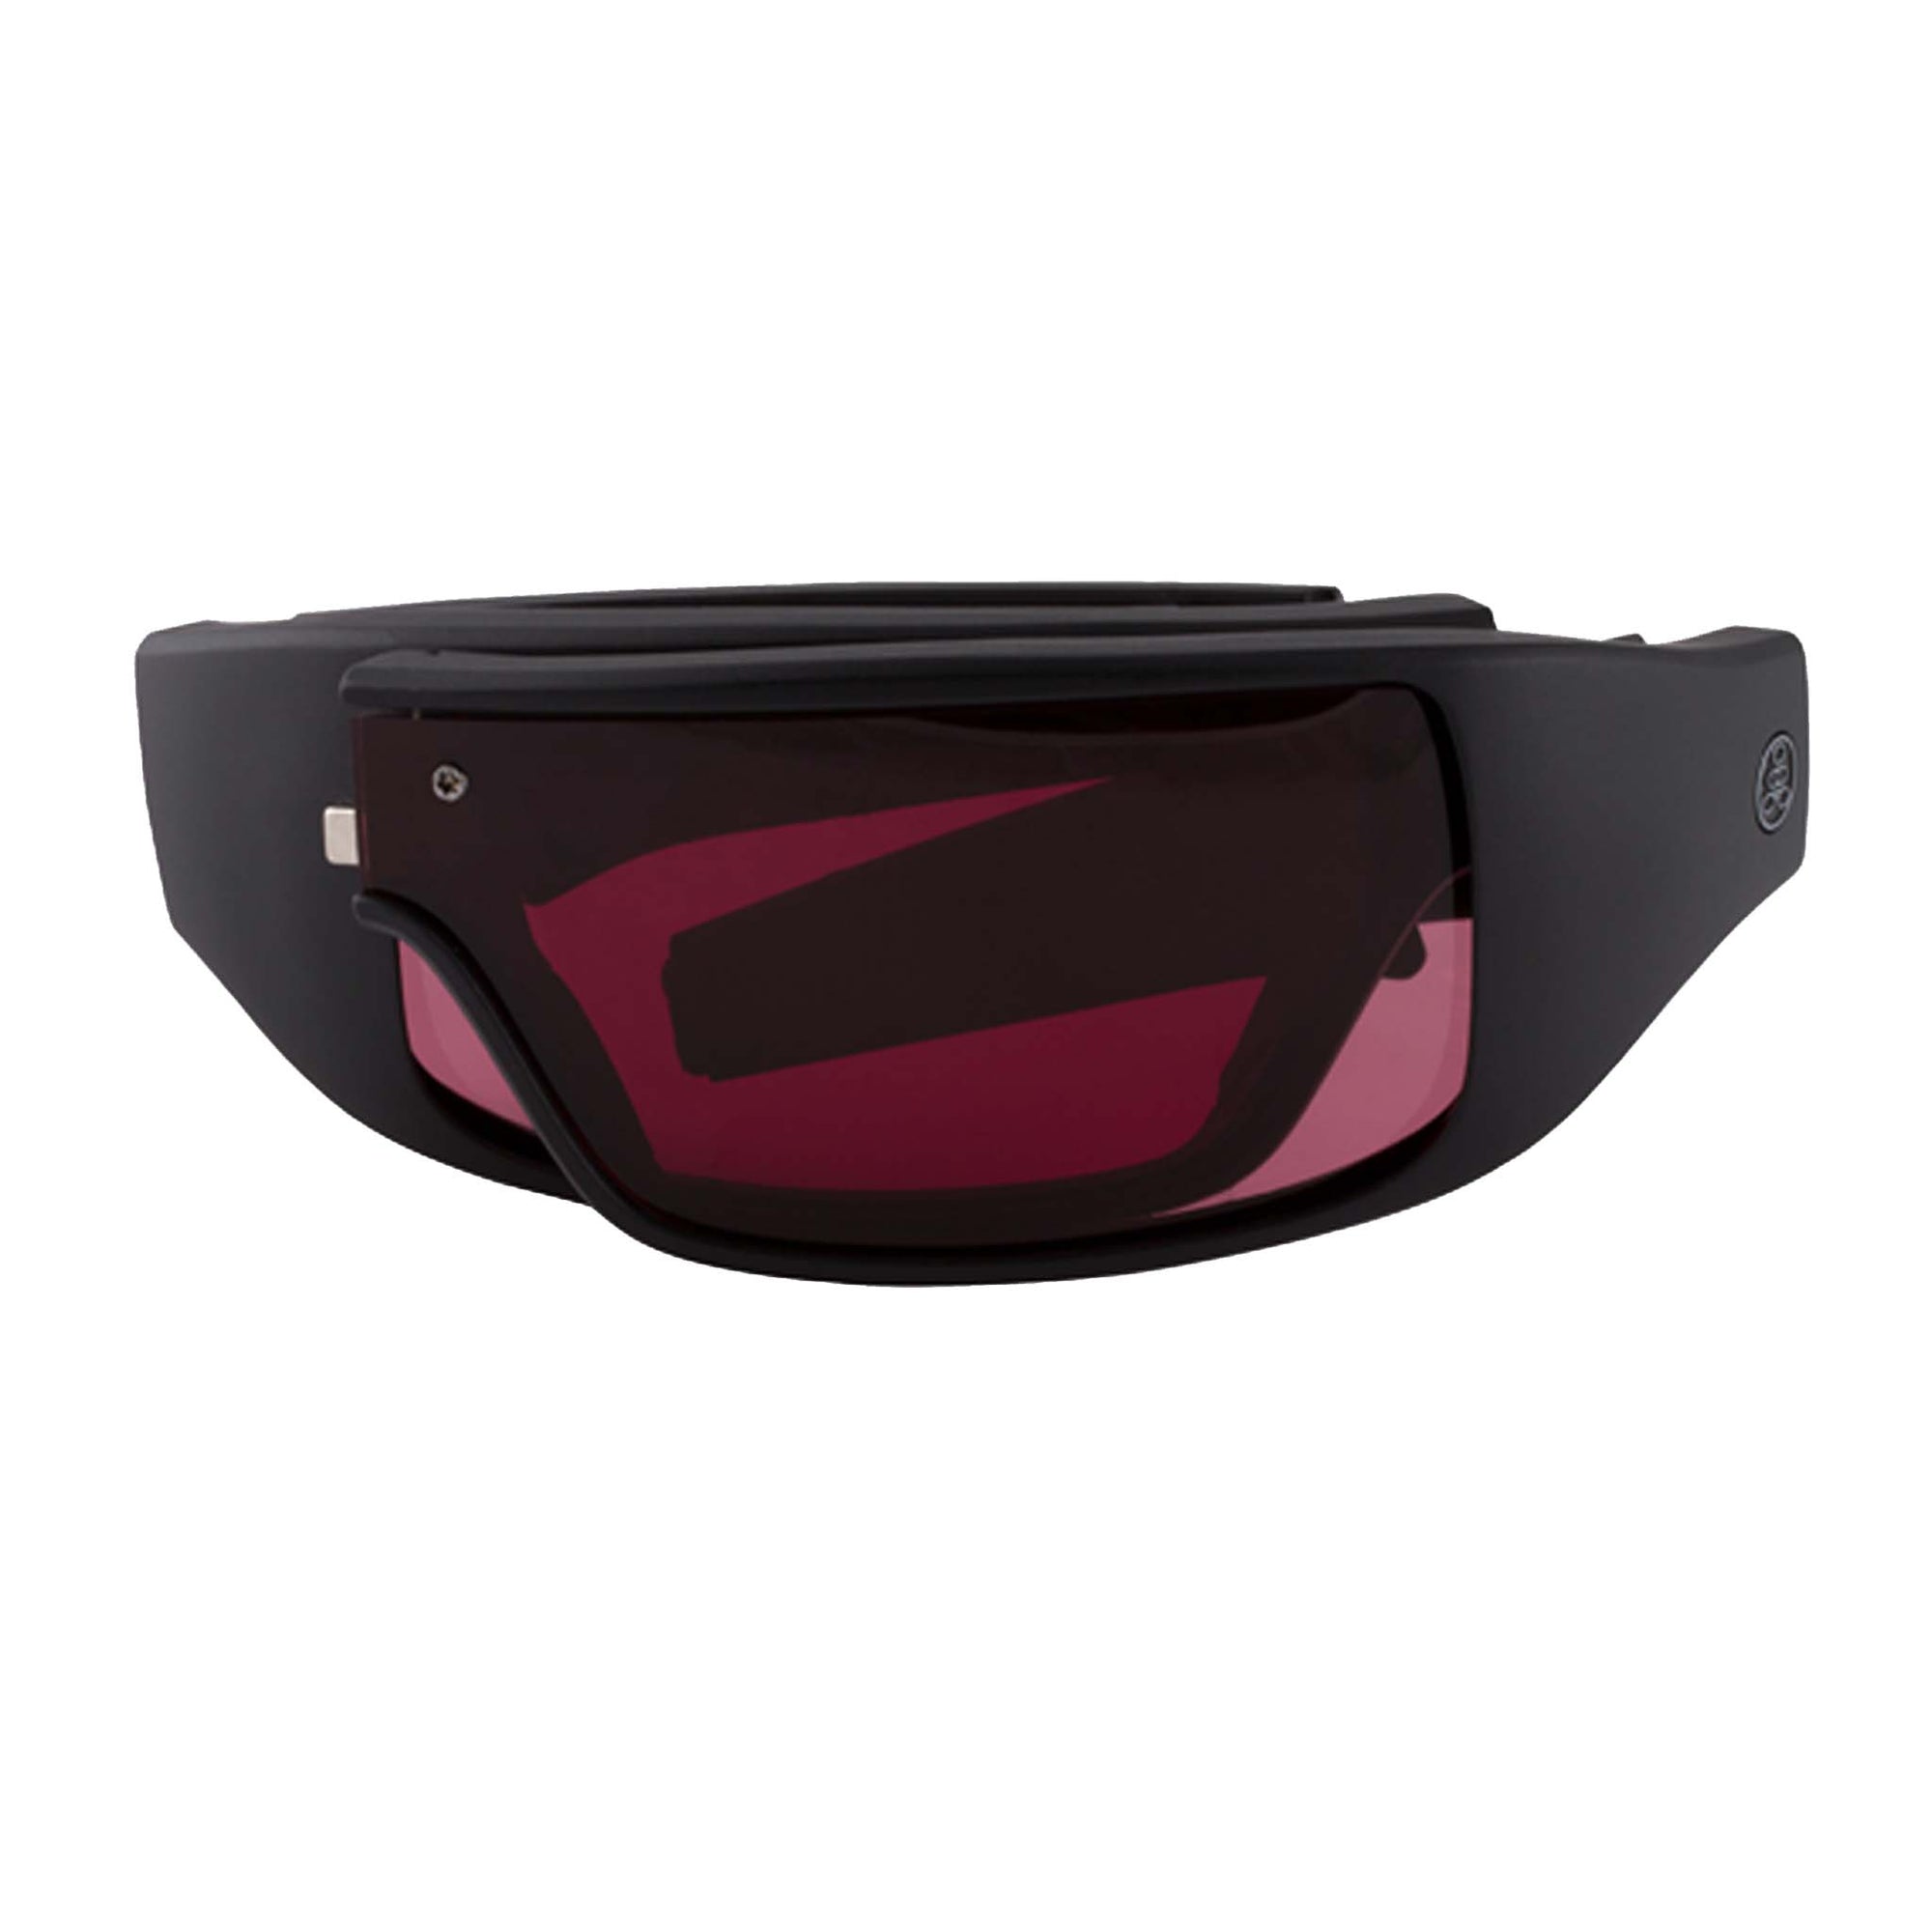 Popticals, Premium Compact Sunglasses, PopGear, 200050-BMPS, Standard Sunglasses, Matte Black Frame , Purple Golf Lenses, Compact View